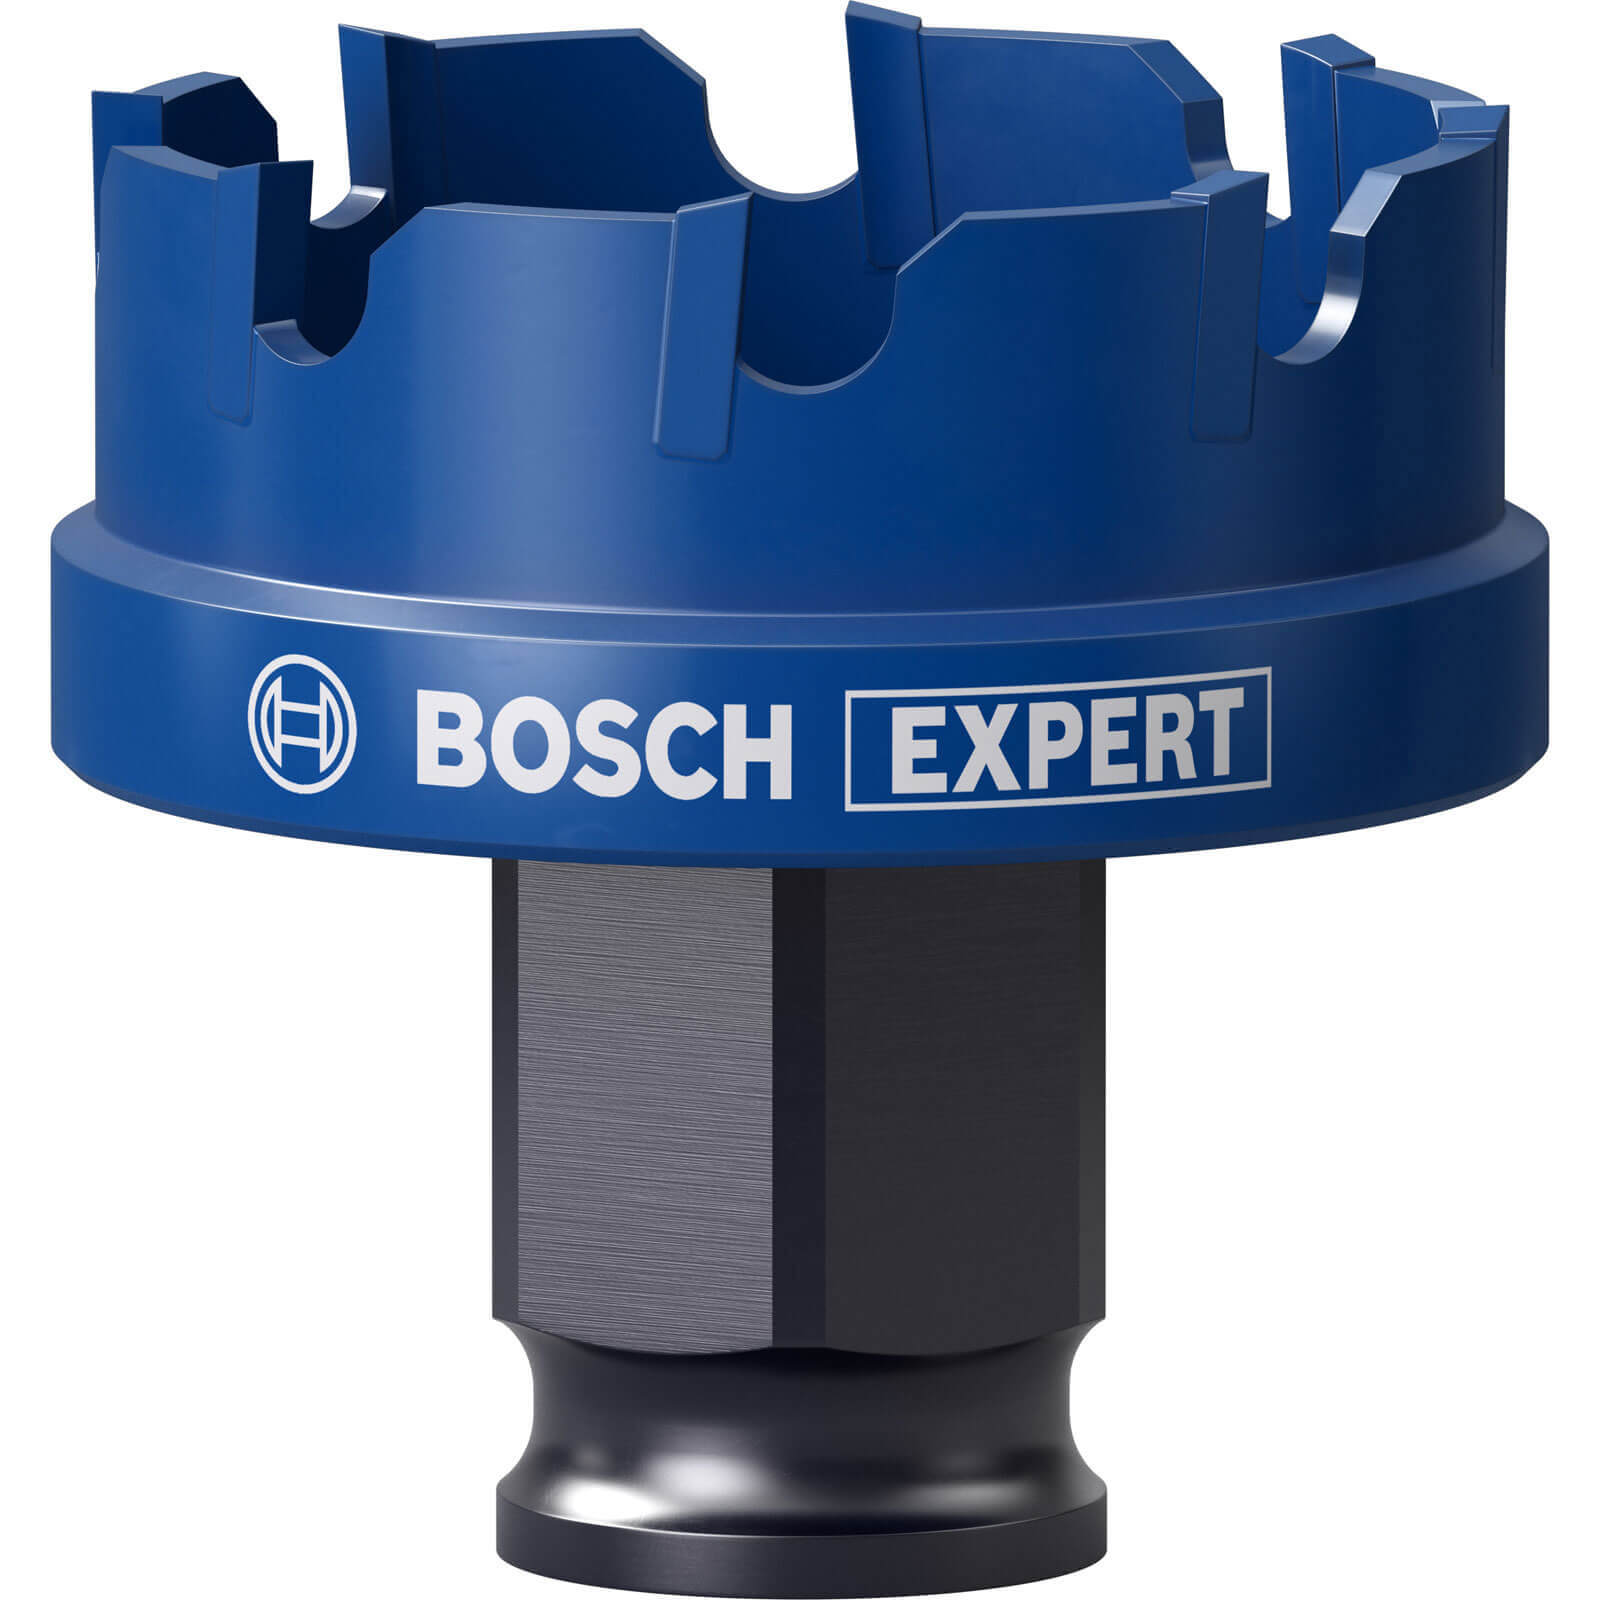 Bosch Expert Carbide Sheet Metal Hole Saw 35mm